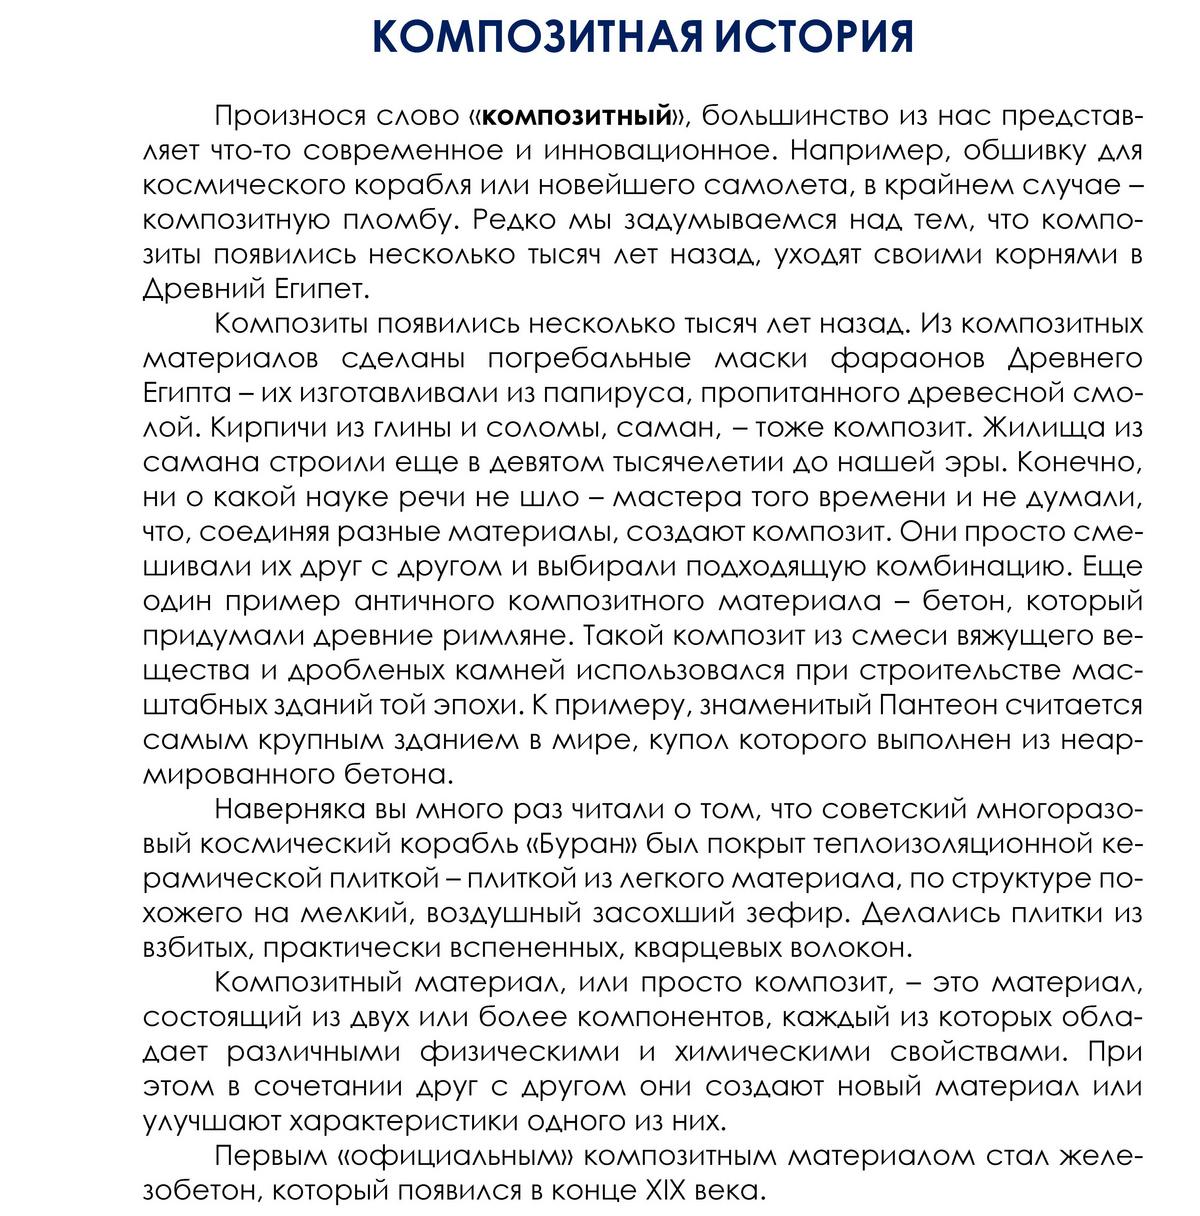 kompozitnaya_istoriya_stranica_1.jpg